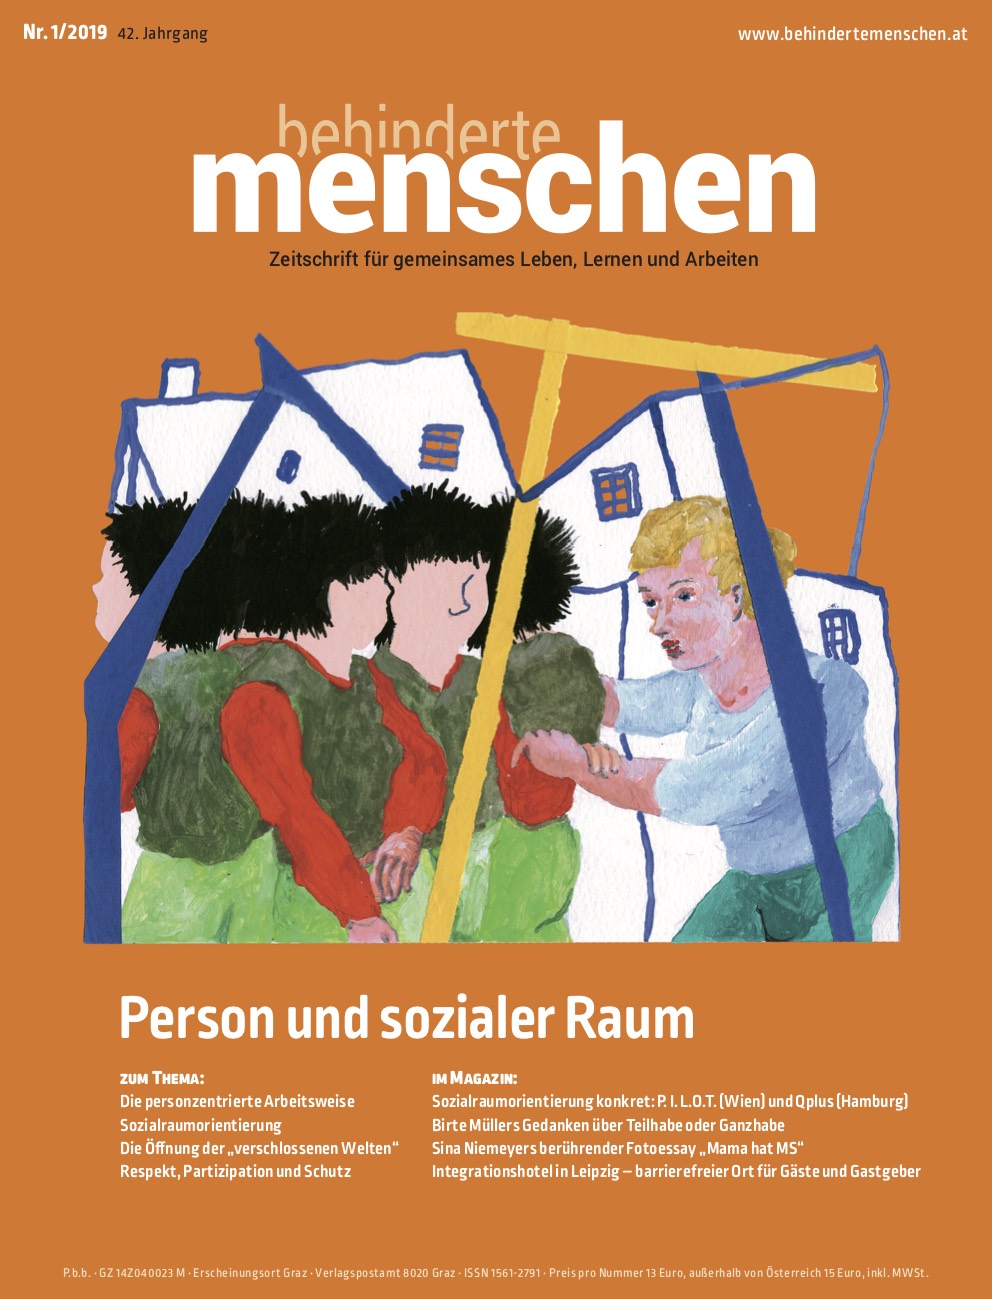 Titelbild Ausgabe 1/2019 "Person und sozialer Raum"